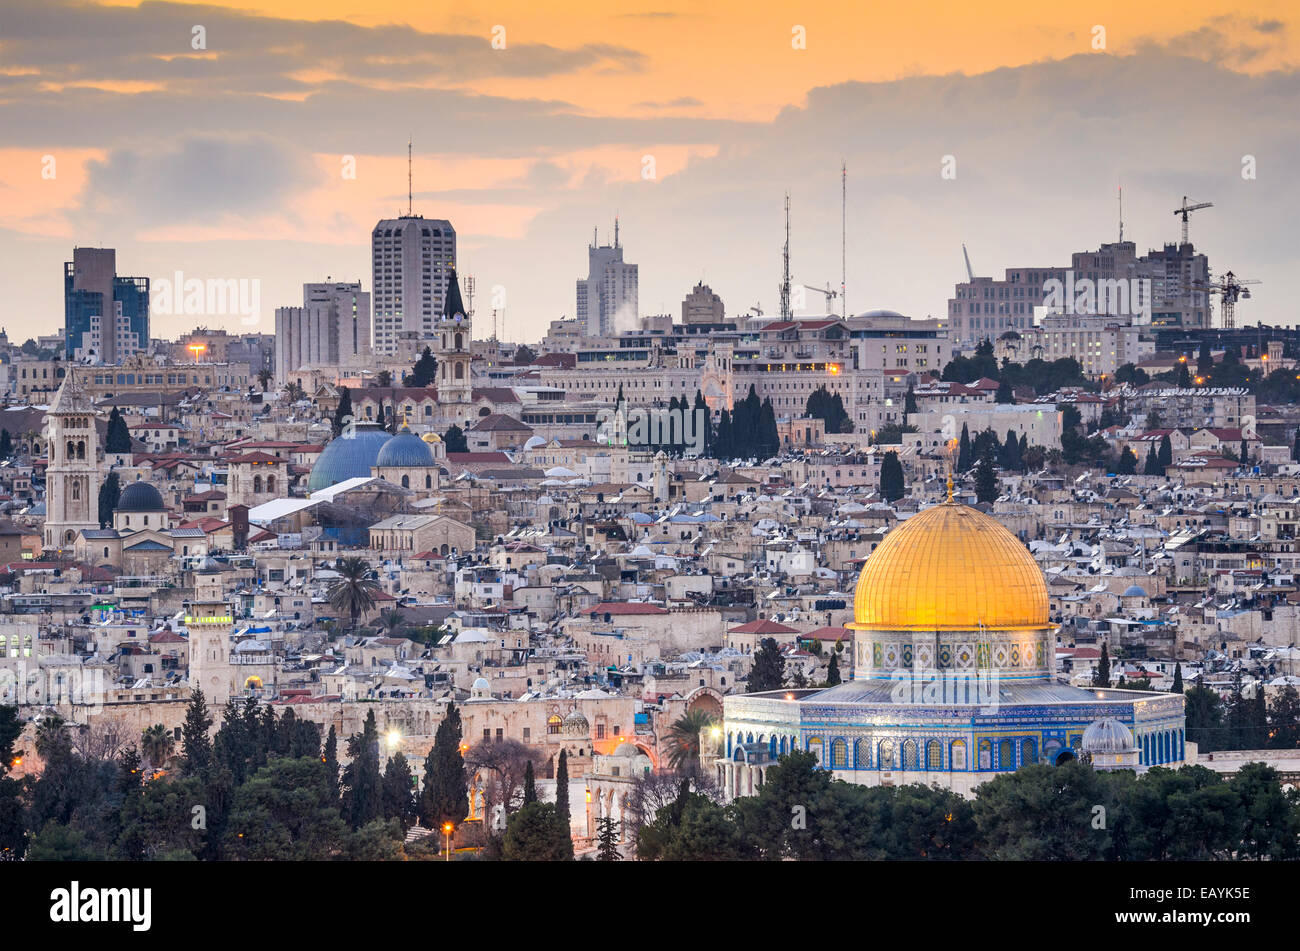 Jerusalem, Israel old city skyline. Stock Photo